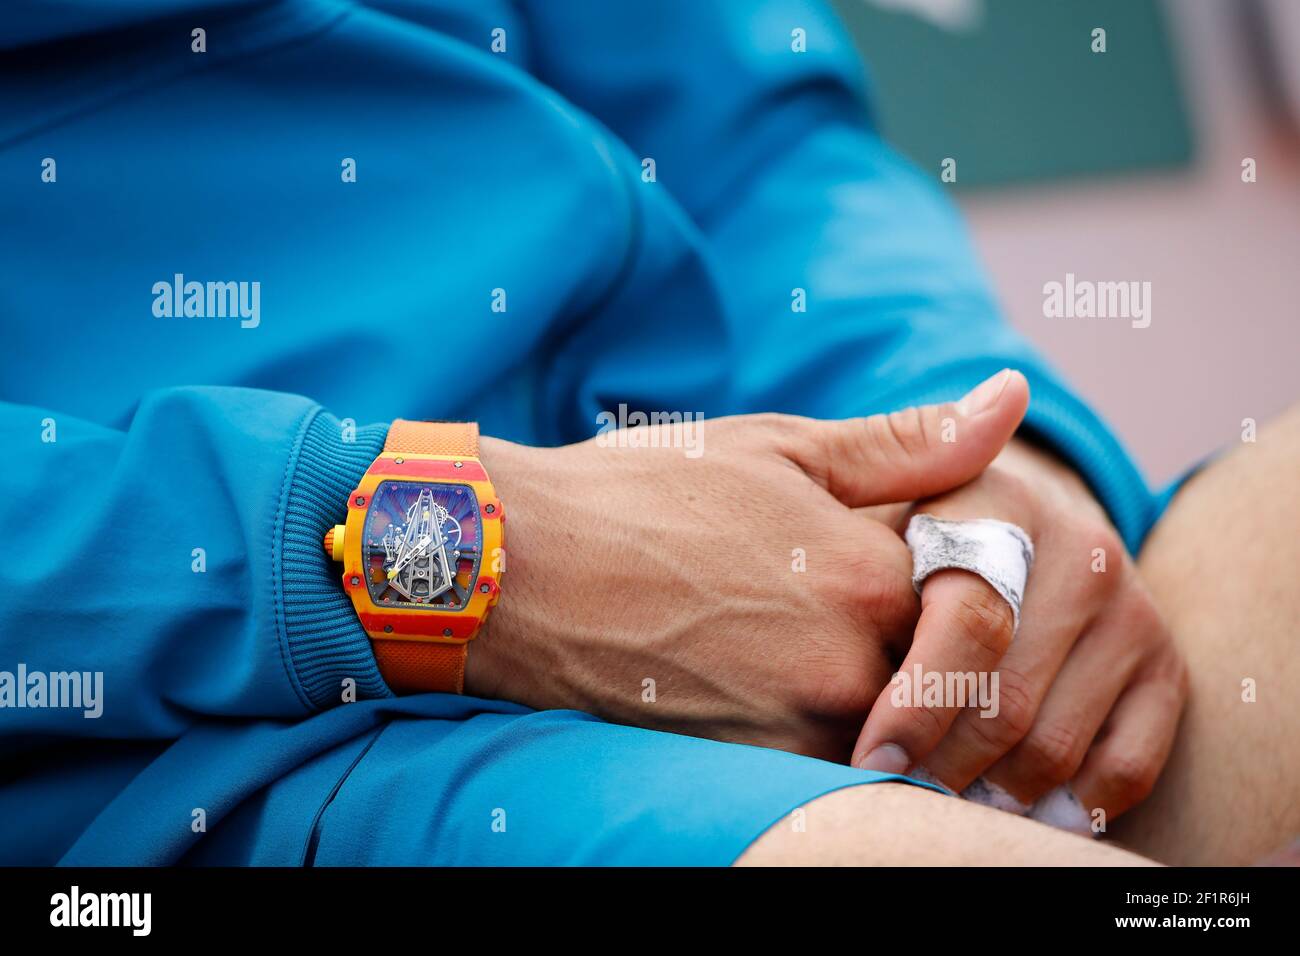 Reloj de reloj Richard Mille Rafael NADAL (ESP) durante el Abierto de Tenis  Francés Roland Garros 2018, sencillo final Men, el 10 de junio de 2018, en  el Estadio Roland Garros en